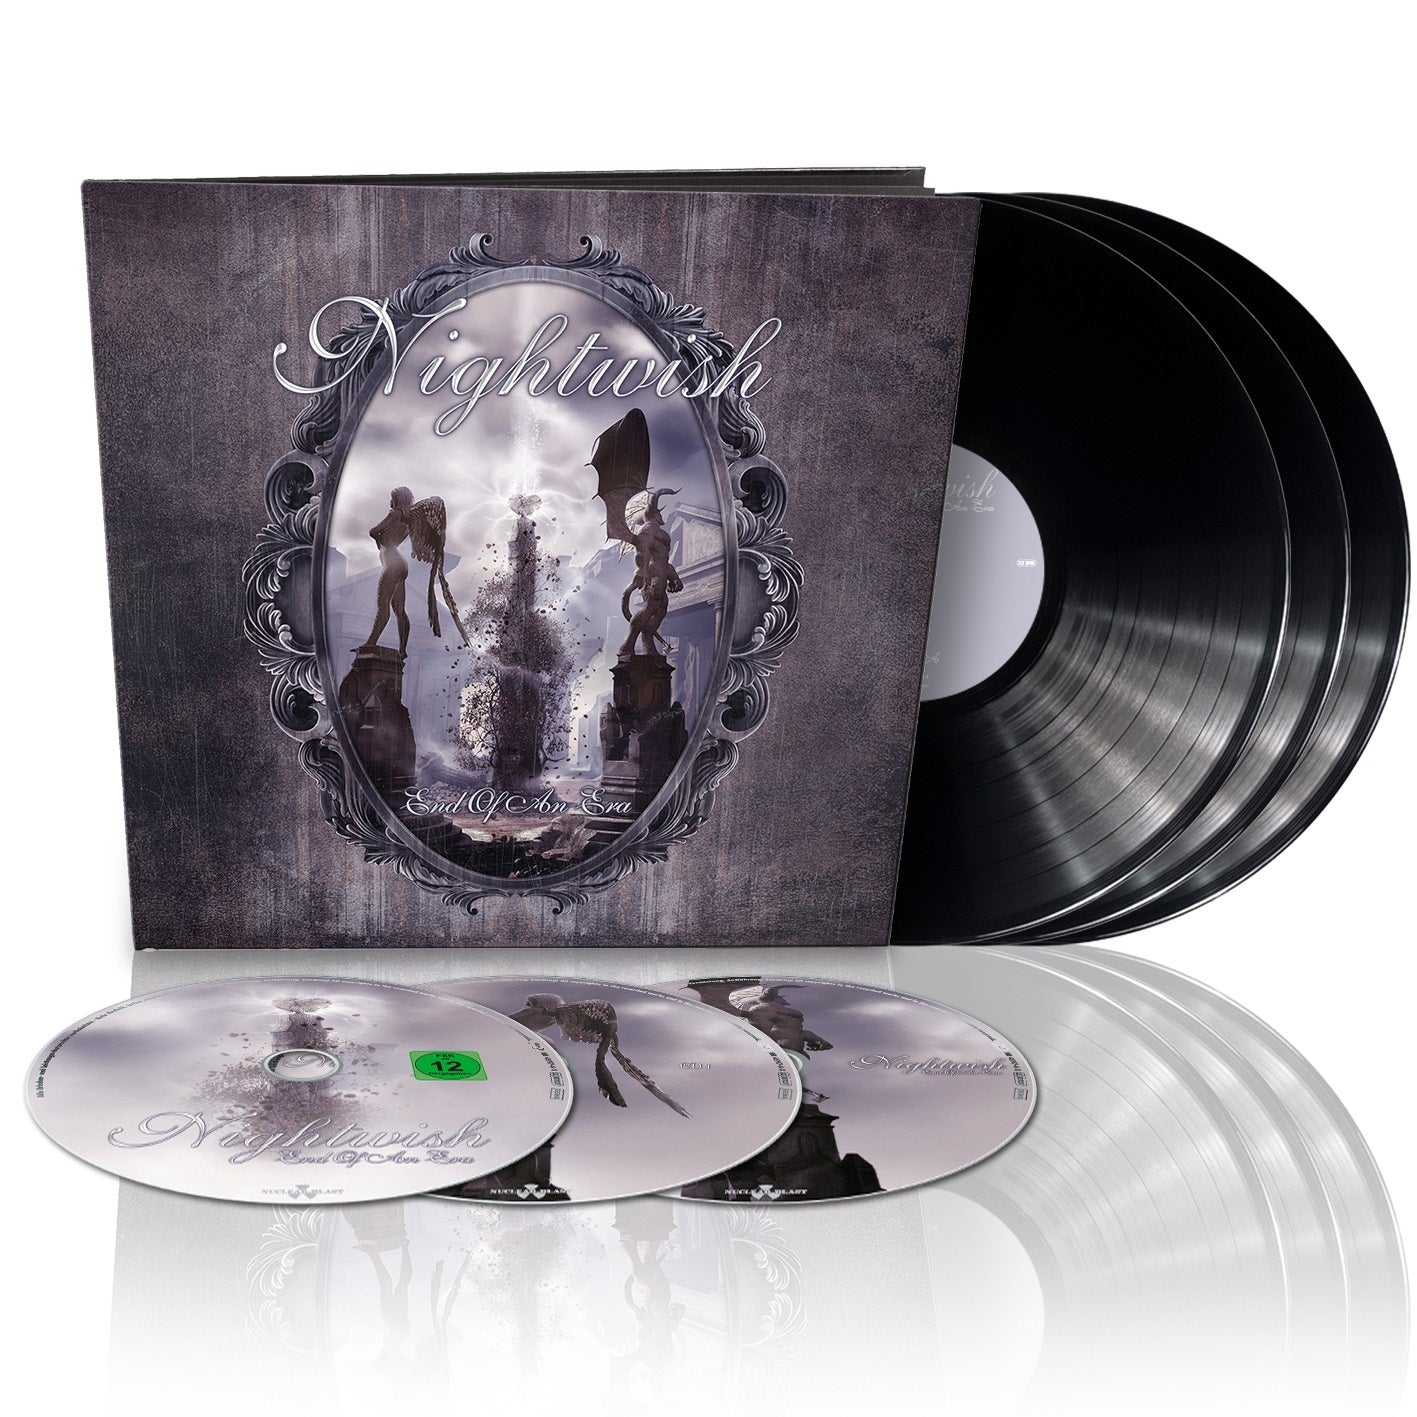 Nightwish "End Of An Era" Blu-Ray / 2 CD / 3 LP Earbook